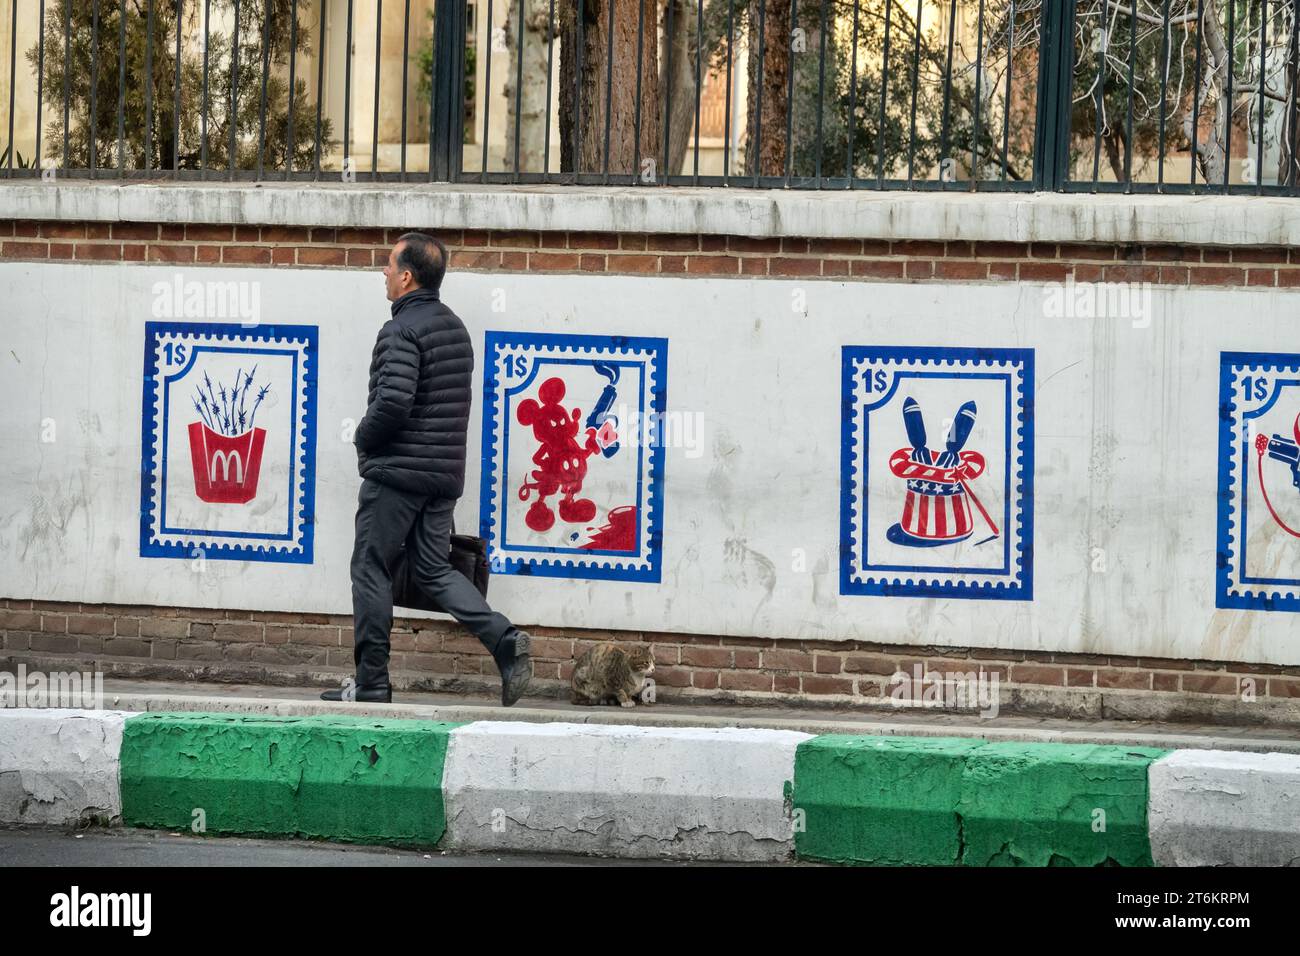 Teheran, Iran - 14 gennaio 2023: Una parodia dei valori americani (The American Dream, società usa e getta). Disegni sul muro dell'ex ambasciata degli Stati Uniti. R Foto Stock